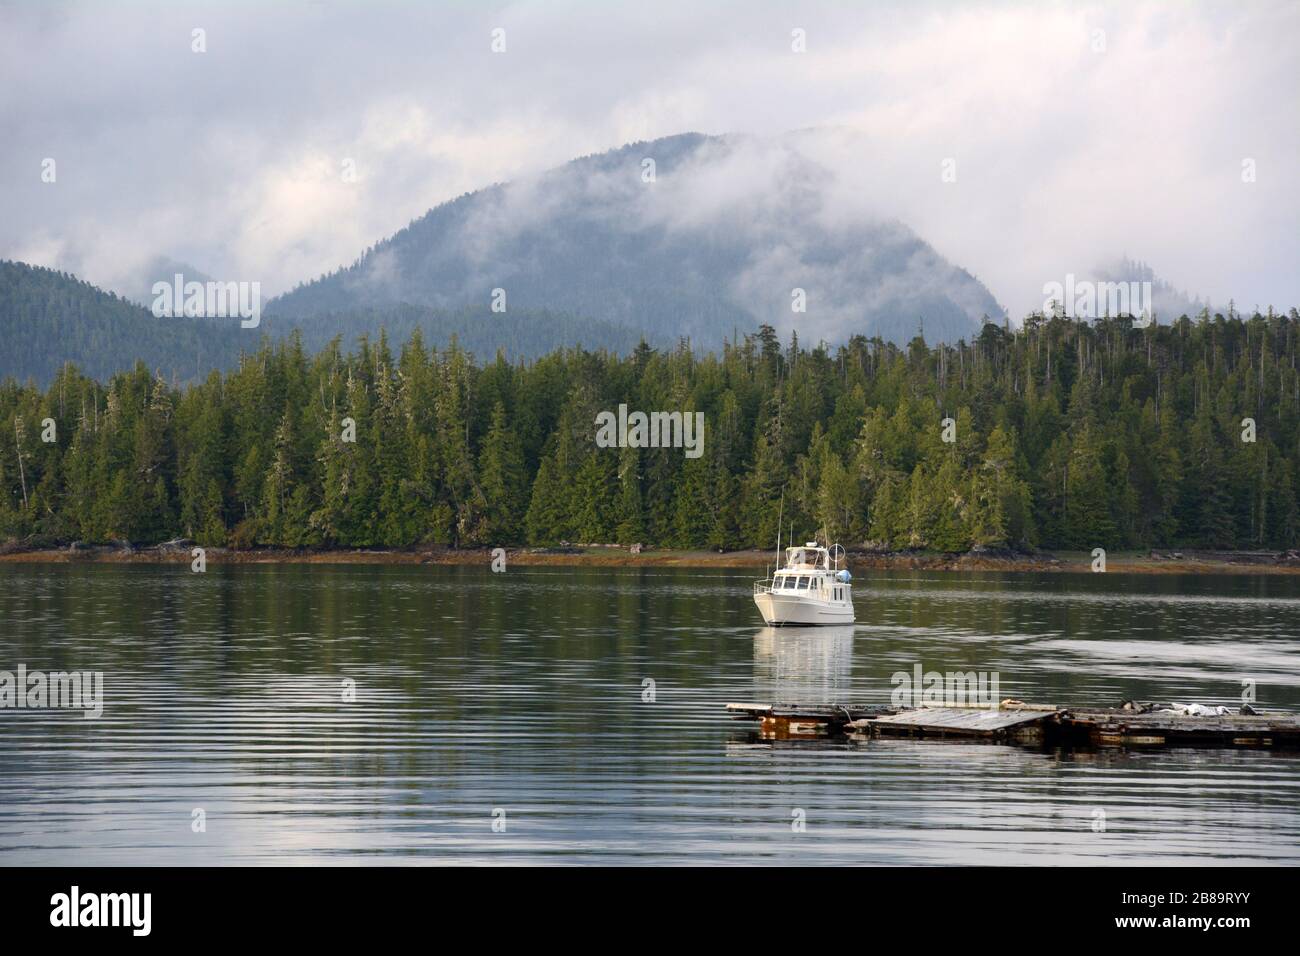 Un petit yacht ancré dans une crique au large de la communauté de Shearwater dans la région de Great Bear Rainforest, sur la côte centrale de la Colombie-Britannique, Canada. Banque D'Images